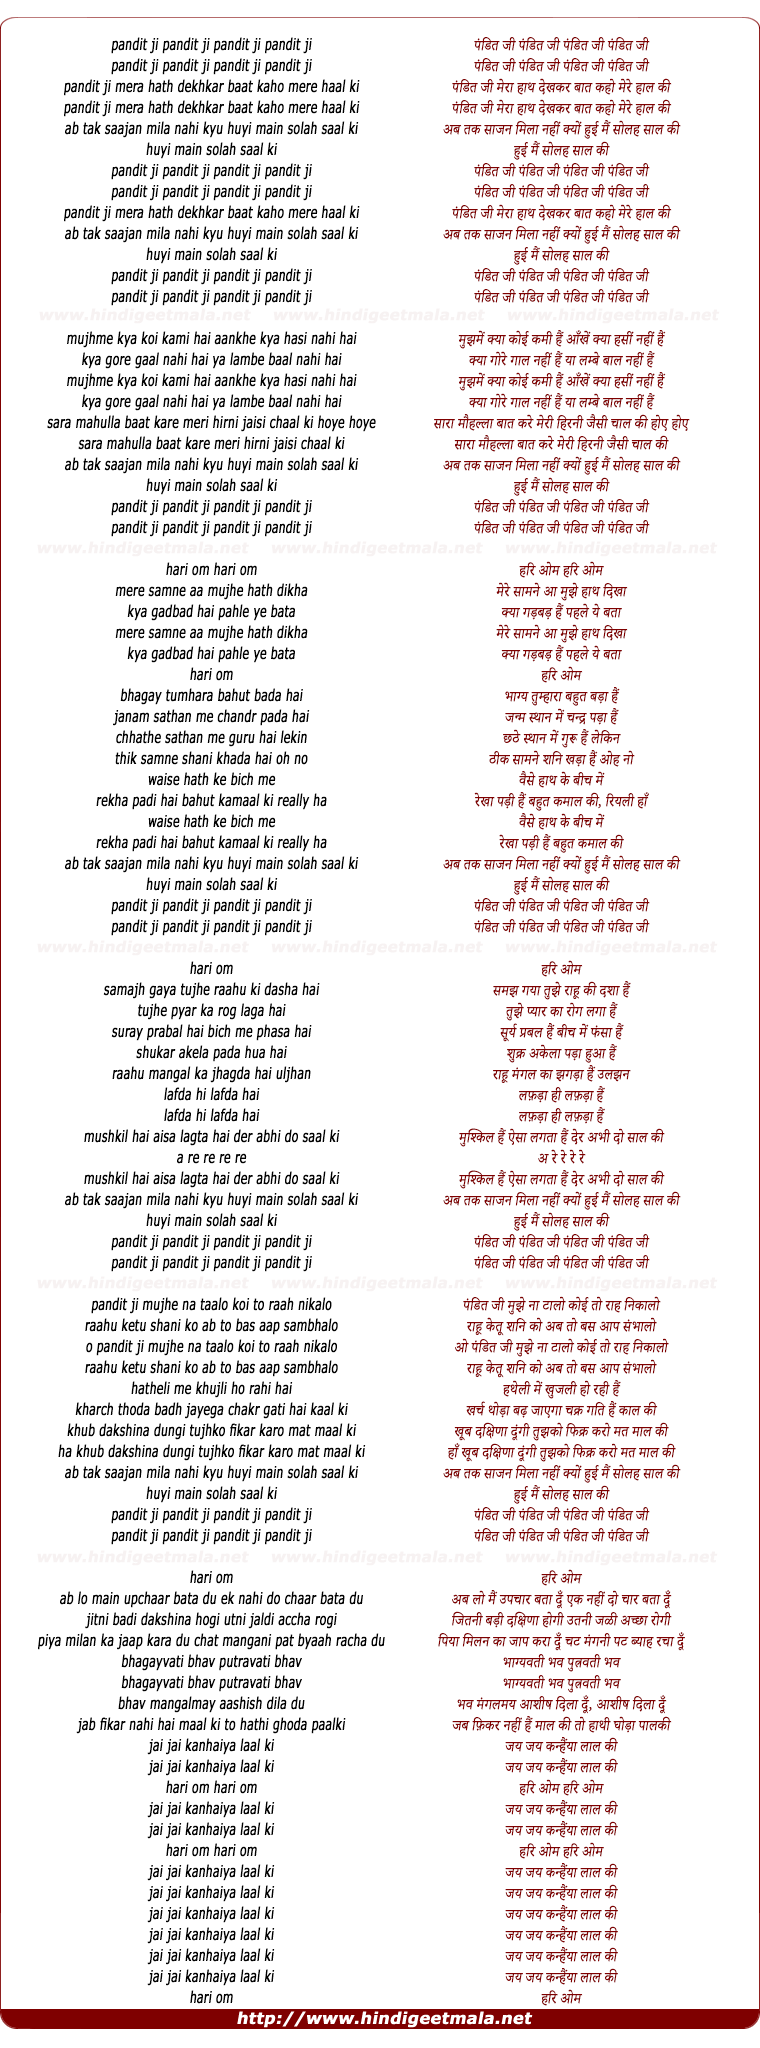 lyrics of song Pandit Ji Meraa Haath Dekh Kar Baat Kaho Mere Haal Ki